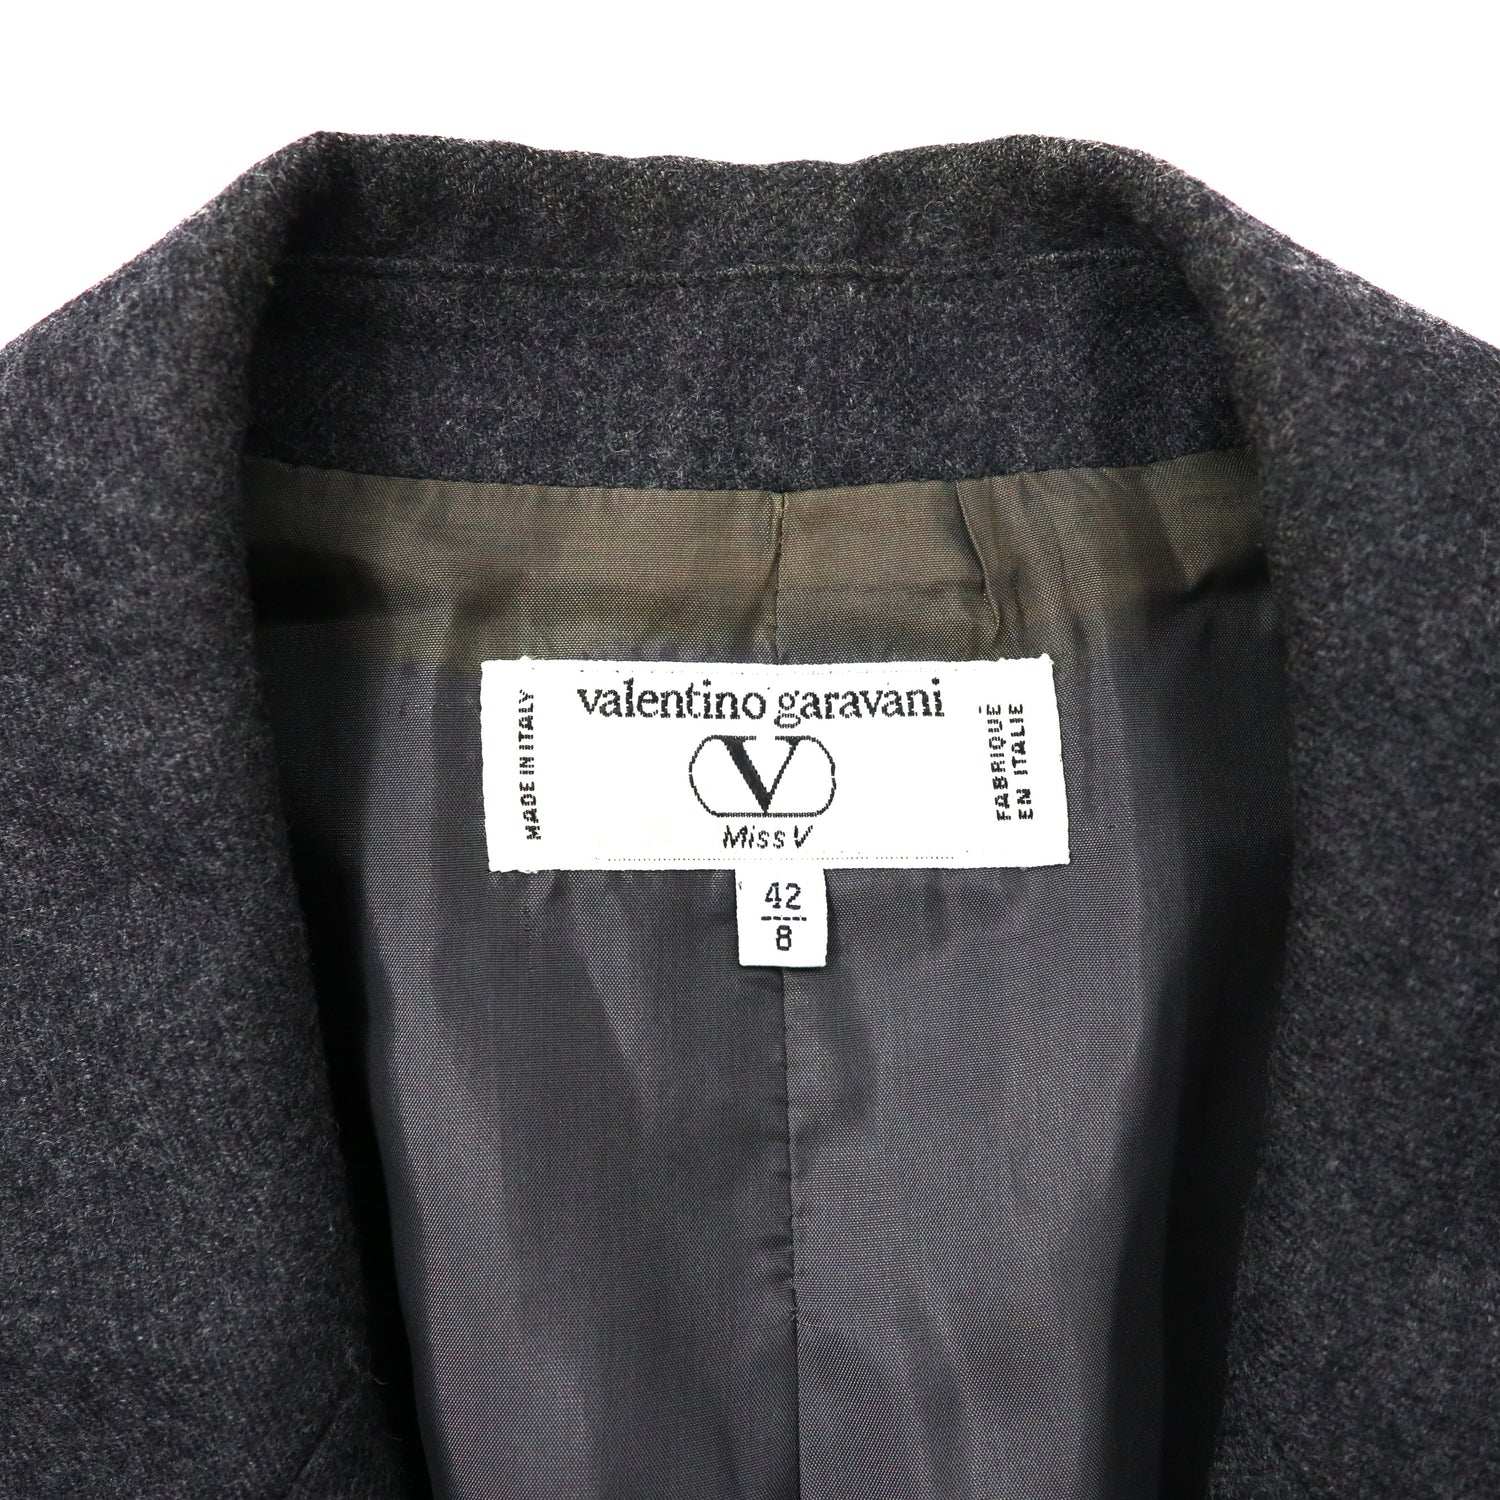 Valentino Garavani 2B tailored jacket 42 Gray Embroidery Lace Wool